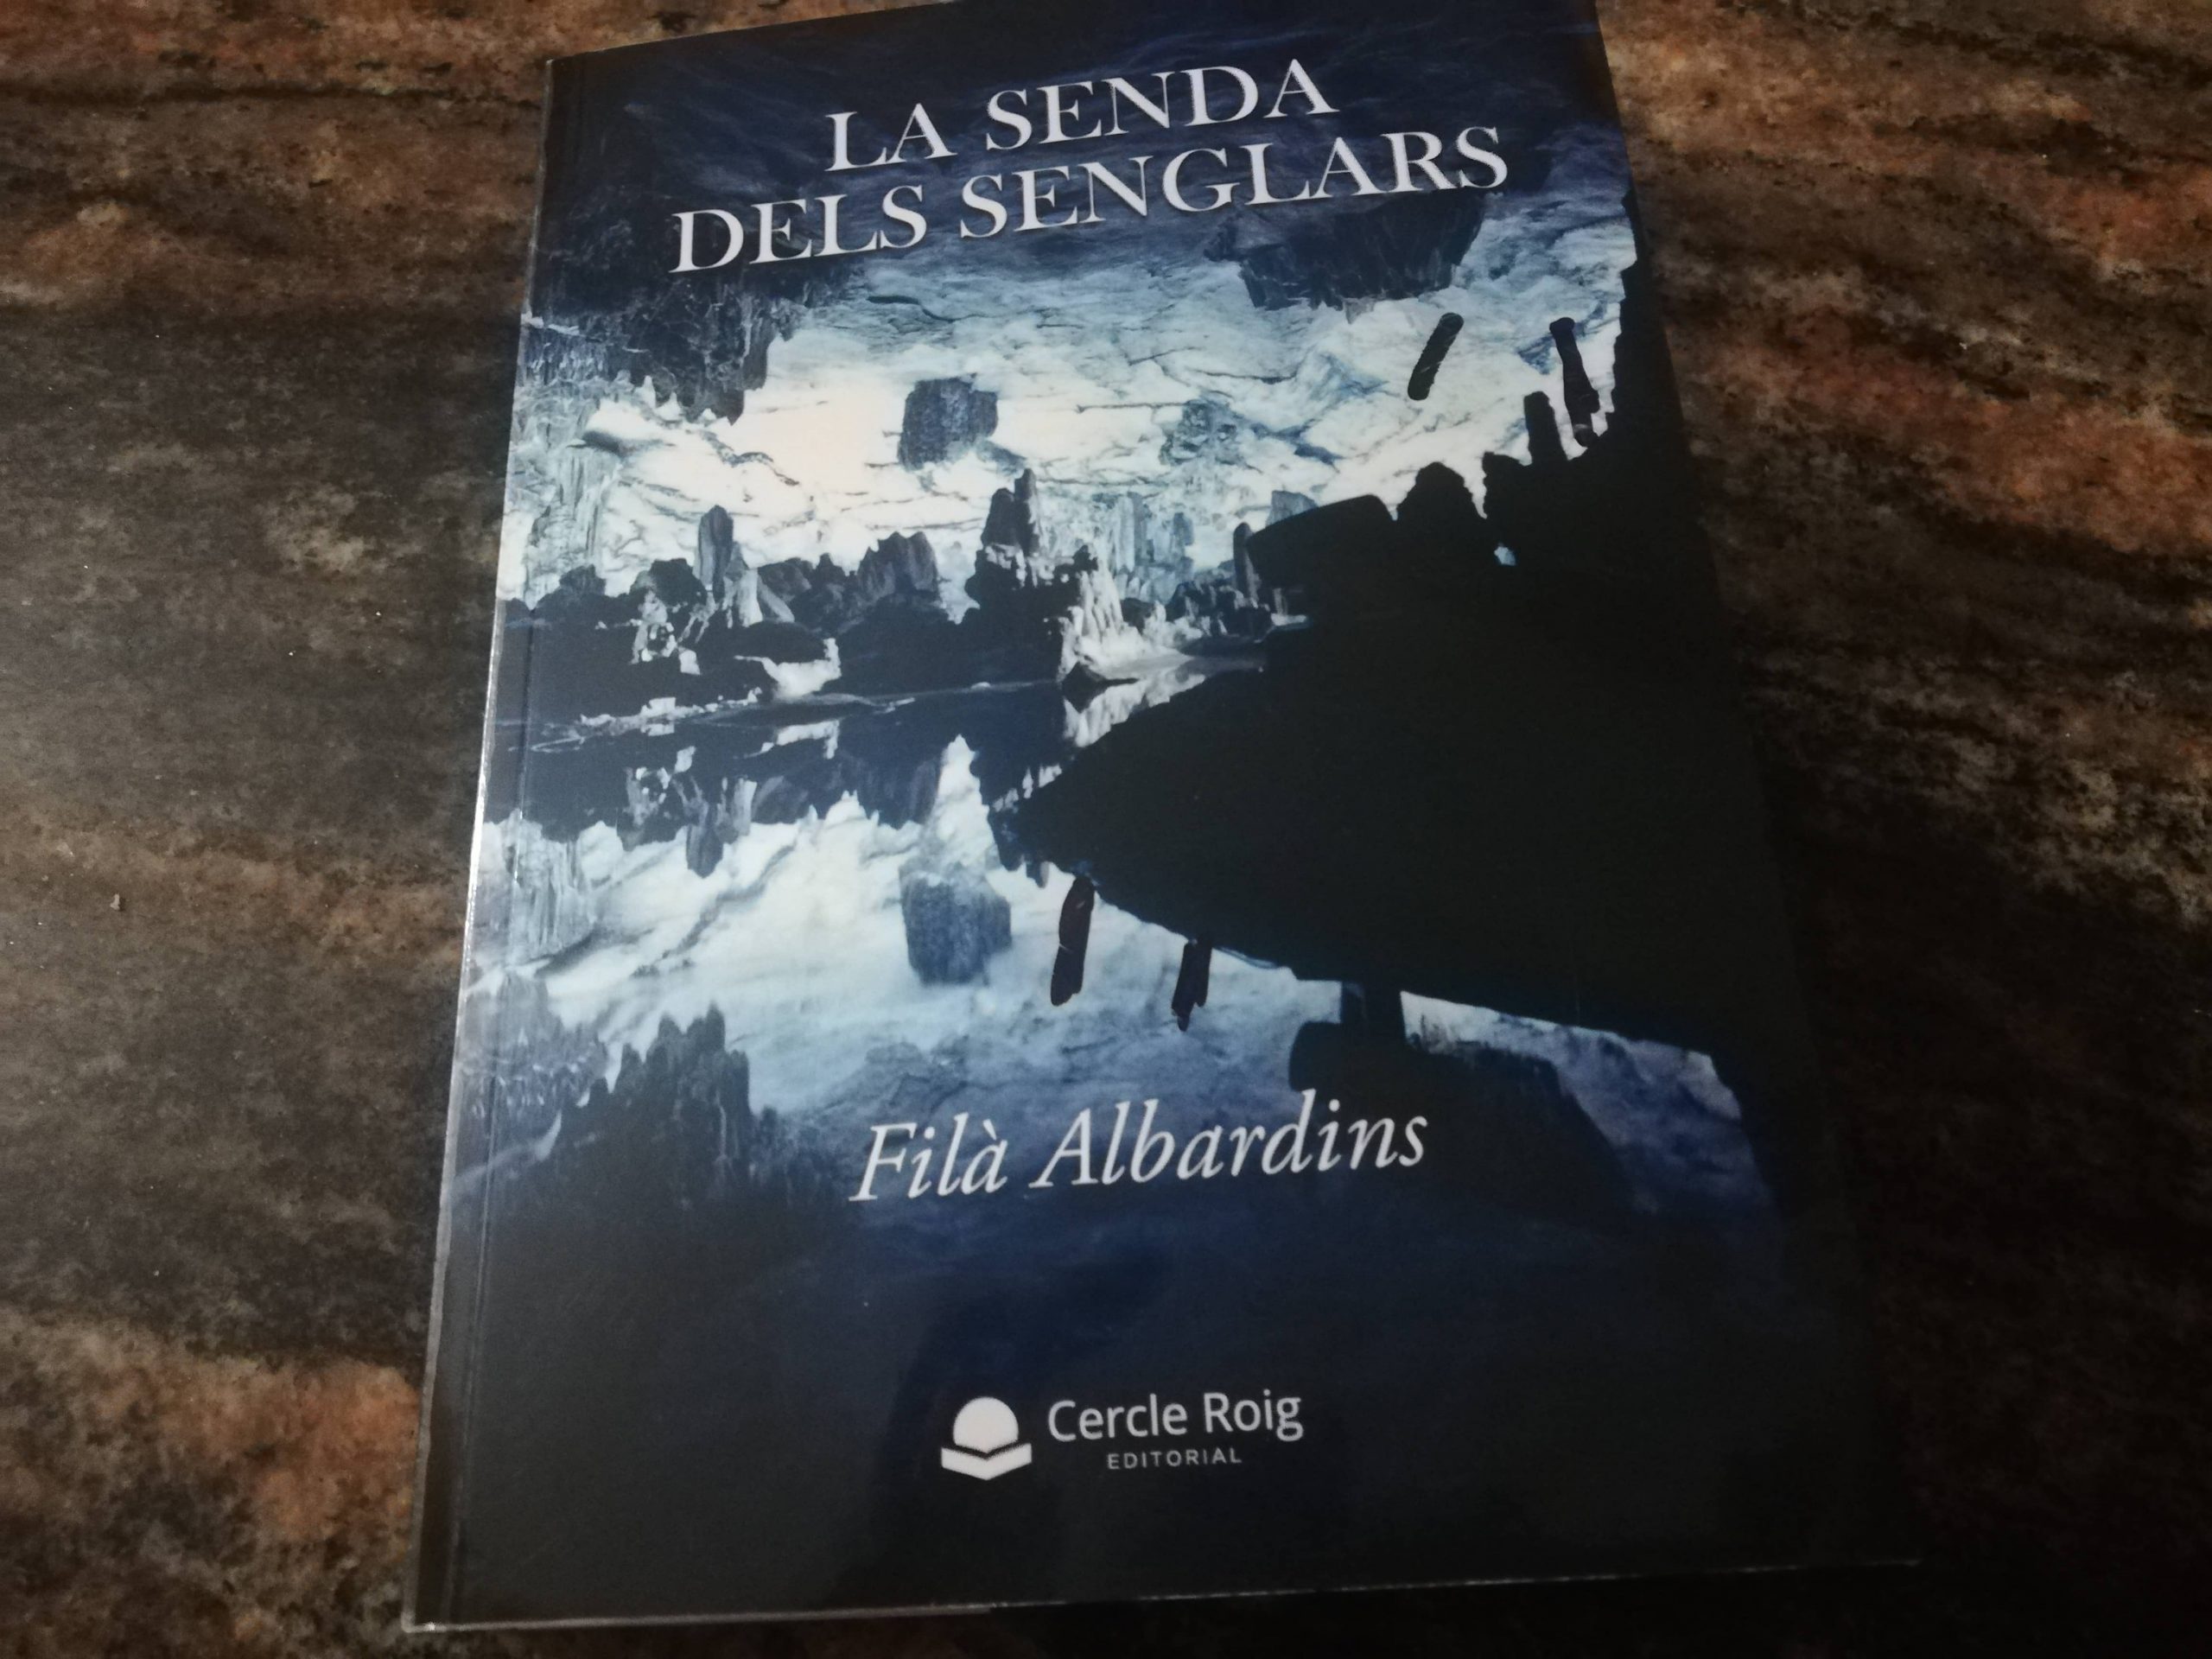 Filà Cristiana Albardins nos presenta su novela «La Senda dels Senglars»